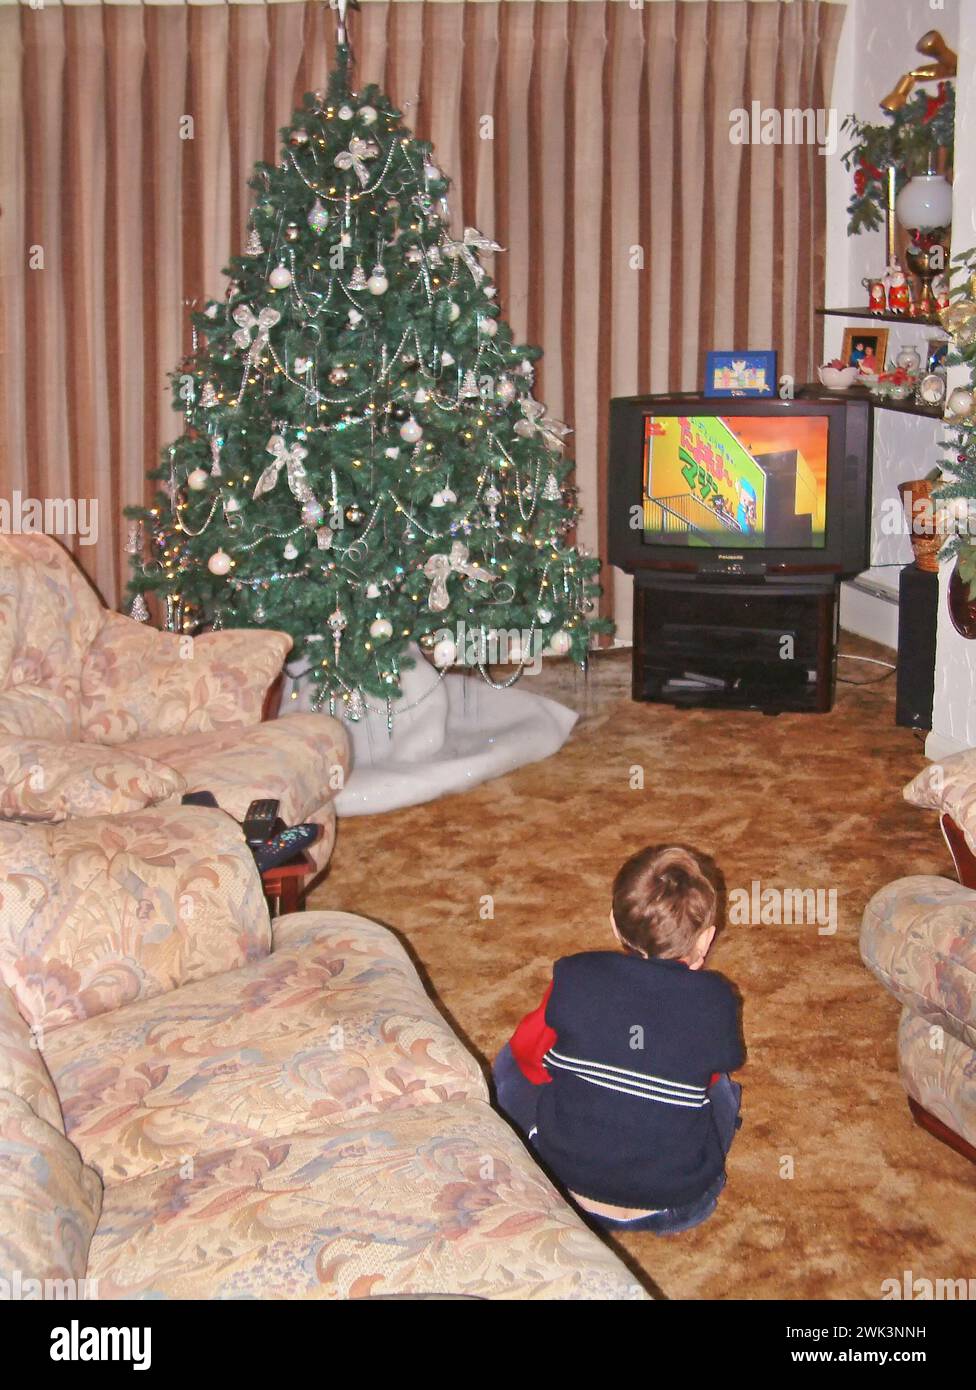 Années 1990 garçon de trois ans archive historique vue arrière image regarder la télévision écran de télévision couleur à l'ancienne à côté de l'arbre de Noël décoré assis sur la moquette dans les années 90 maison meublée salon avec des rideaux dessinés Essex Angleterre Royaume-Uni Banque D'Images